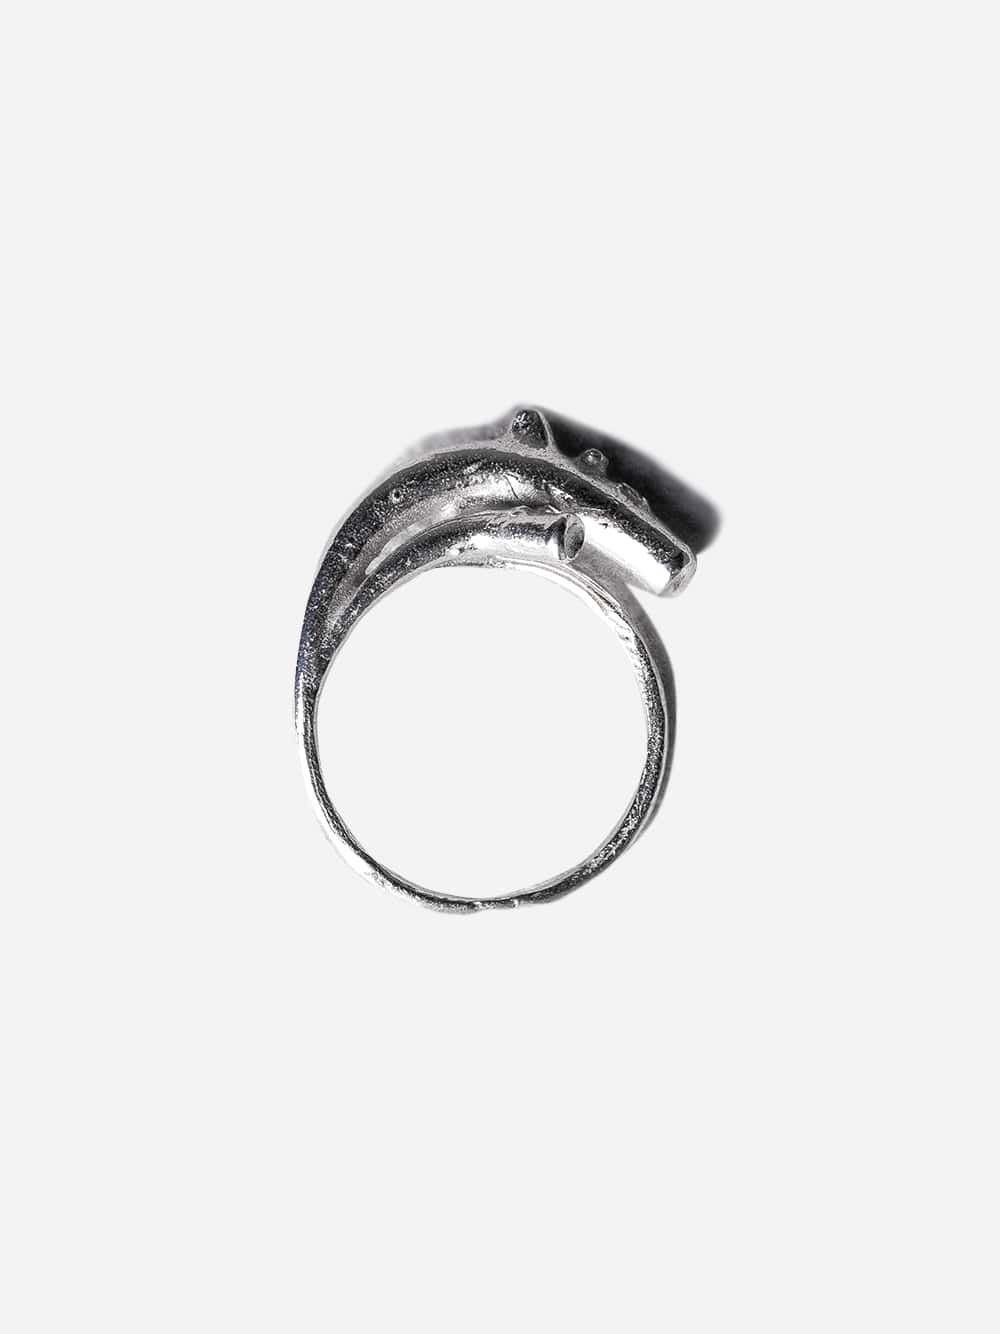 Silver Ring Manuela Aorta 1938-39 | Bellisgirl